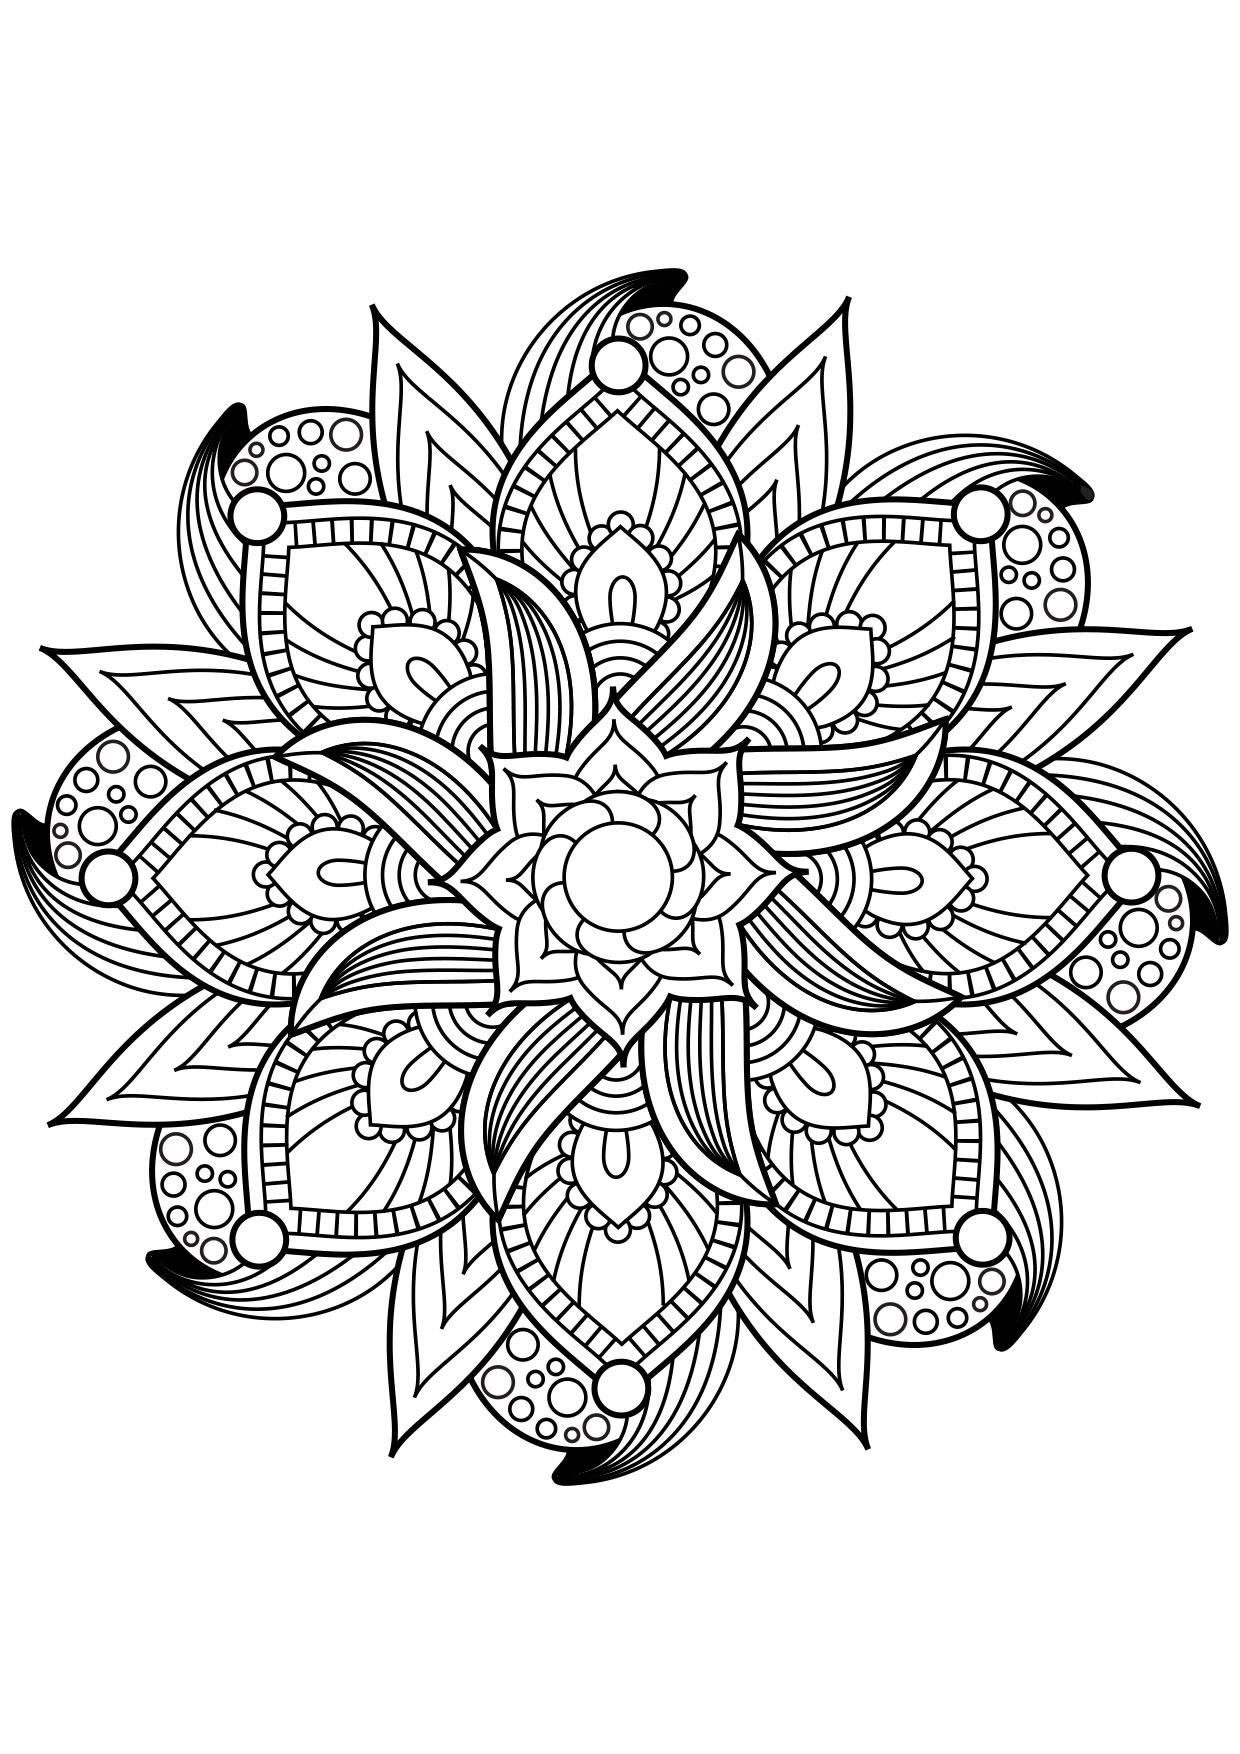 Dibujo para colorear Mandala - Dibujos Para Imprimir Gratis - Img 30875